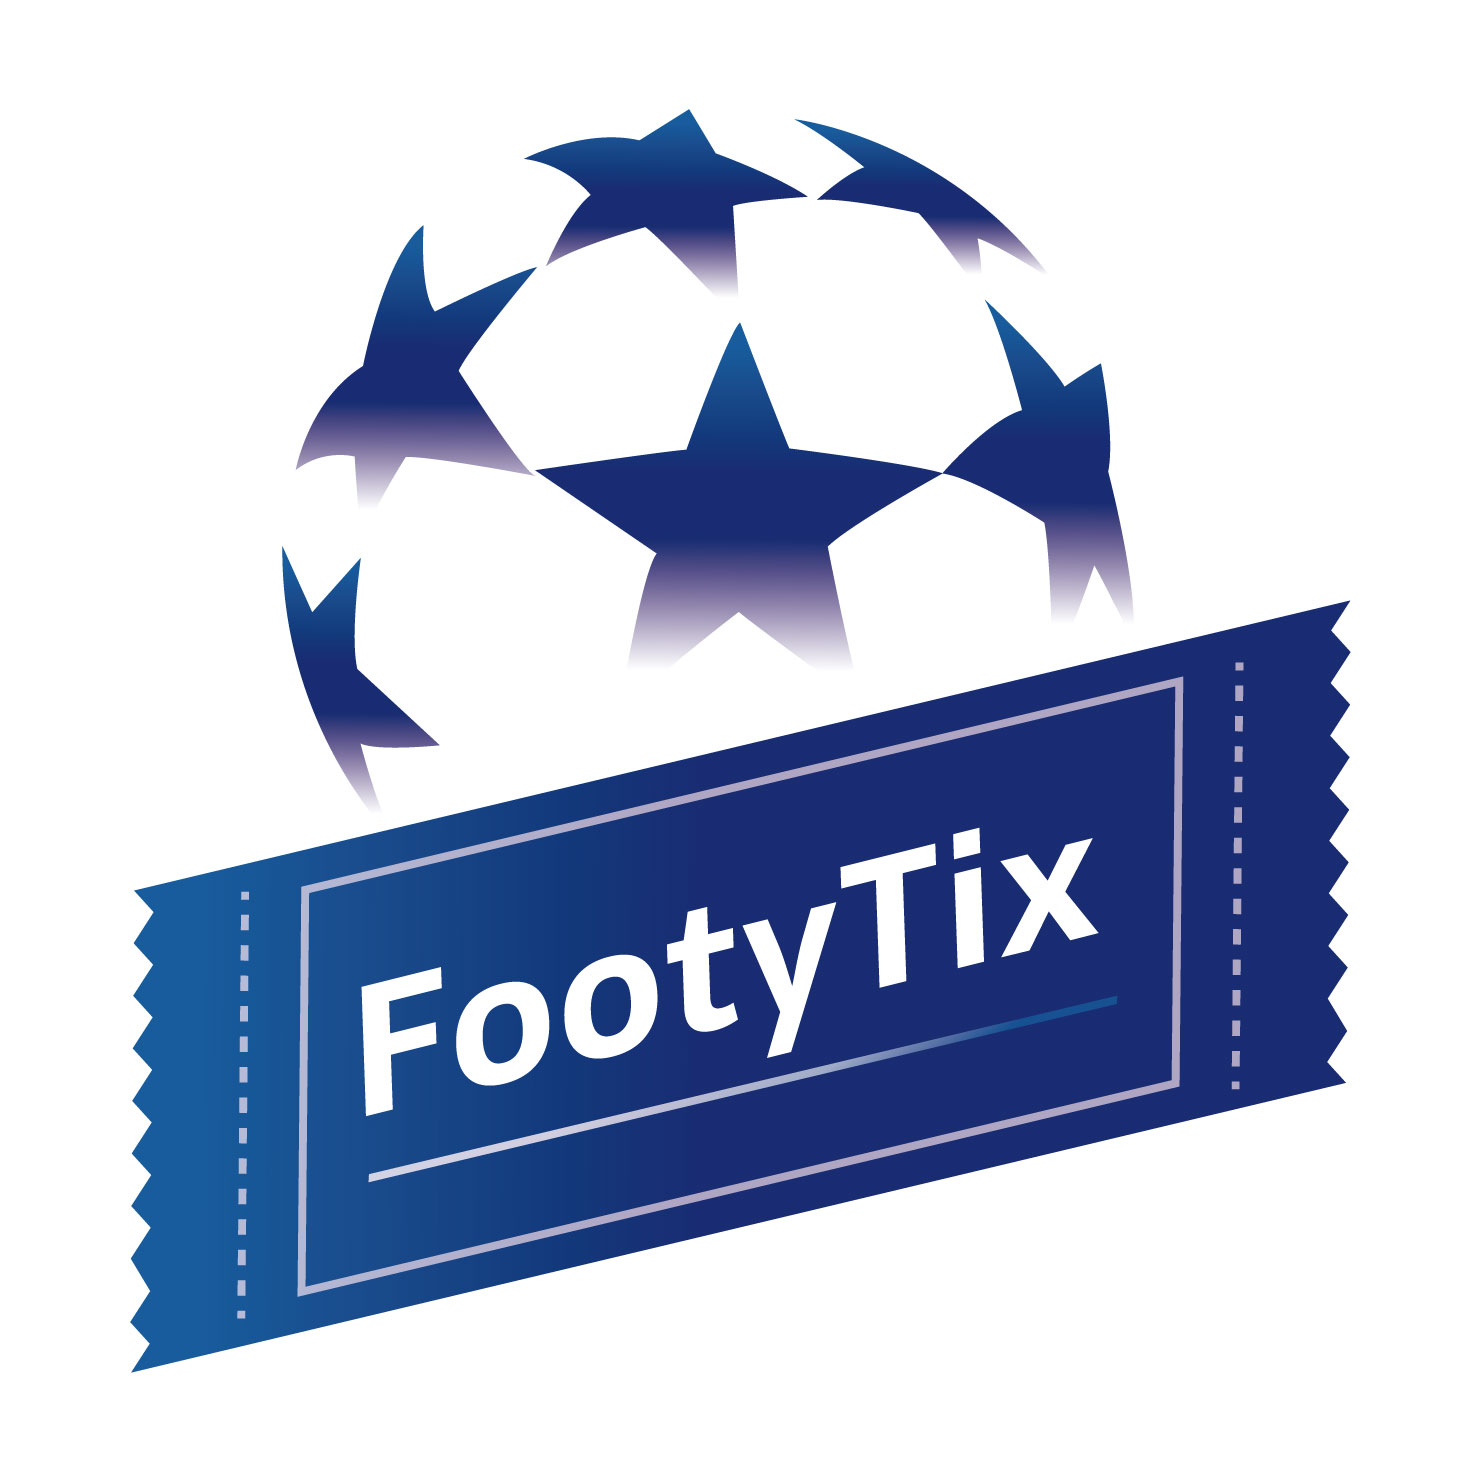 21 22 海外サッカー各国リーグ順位表 Footytix 海外サッカーチケット攻略ブログ